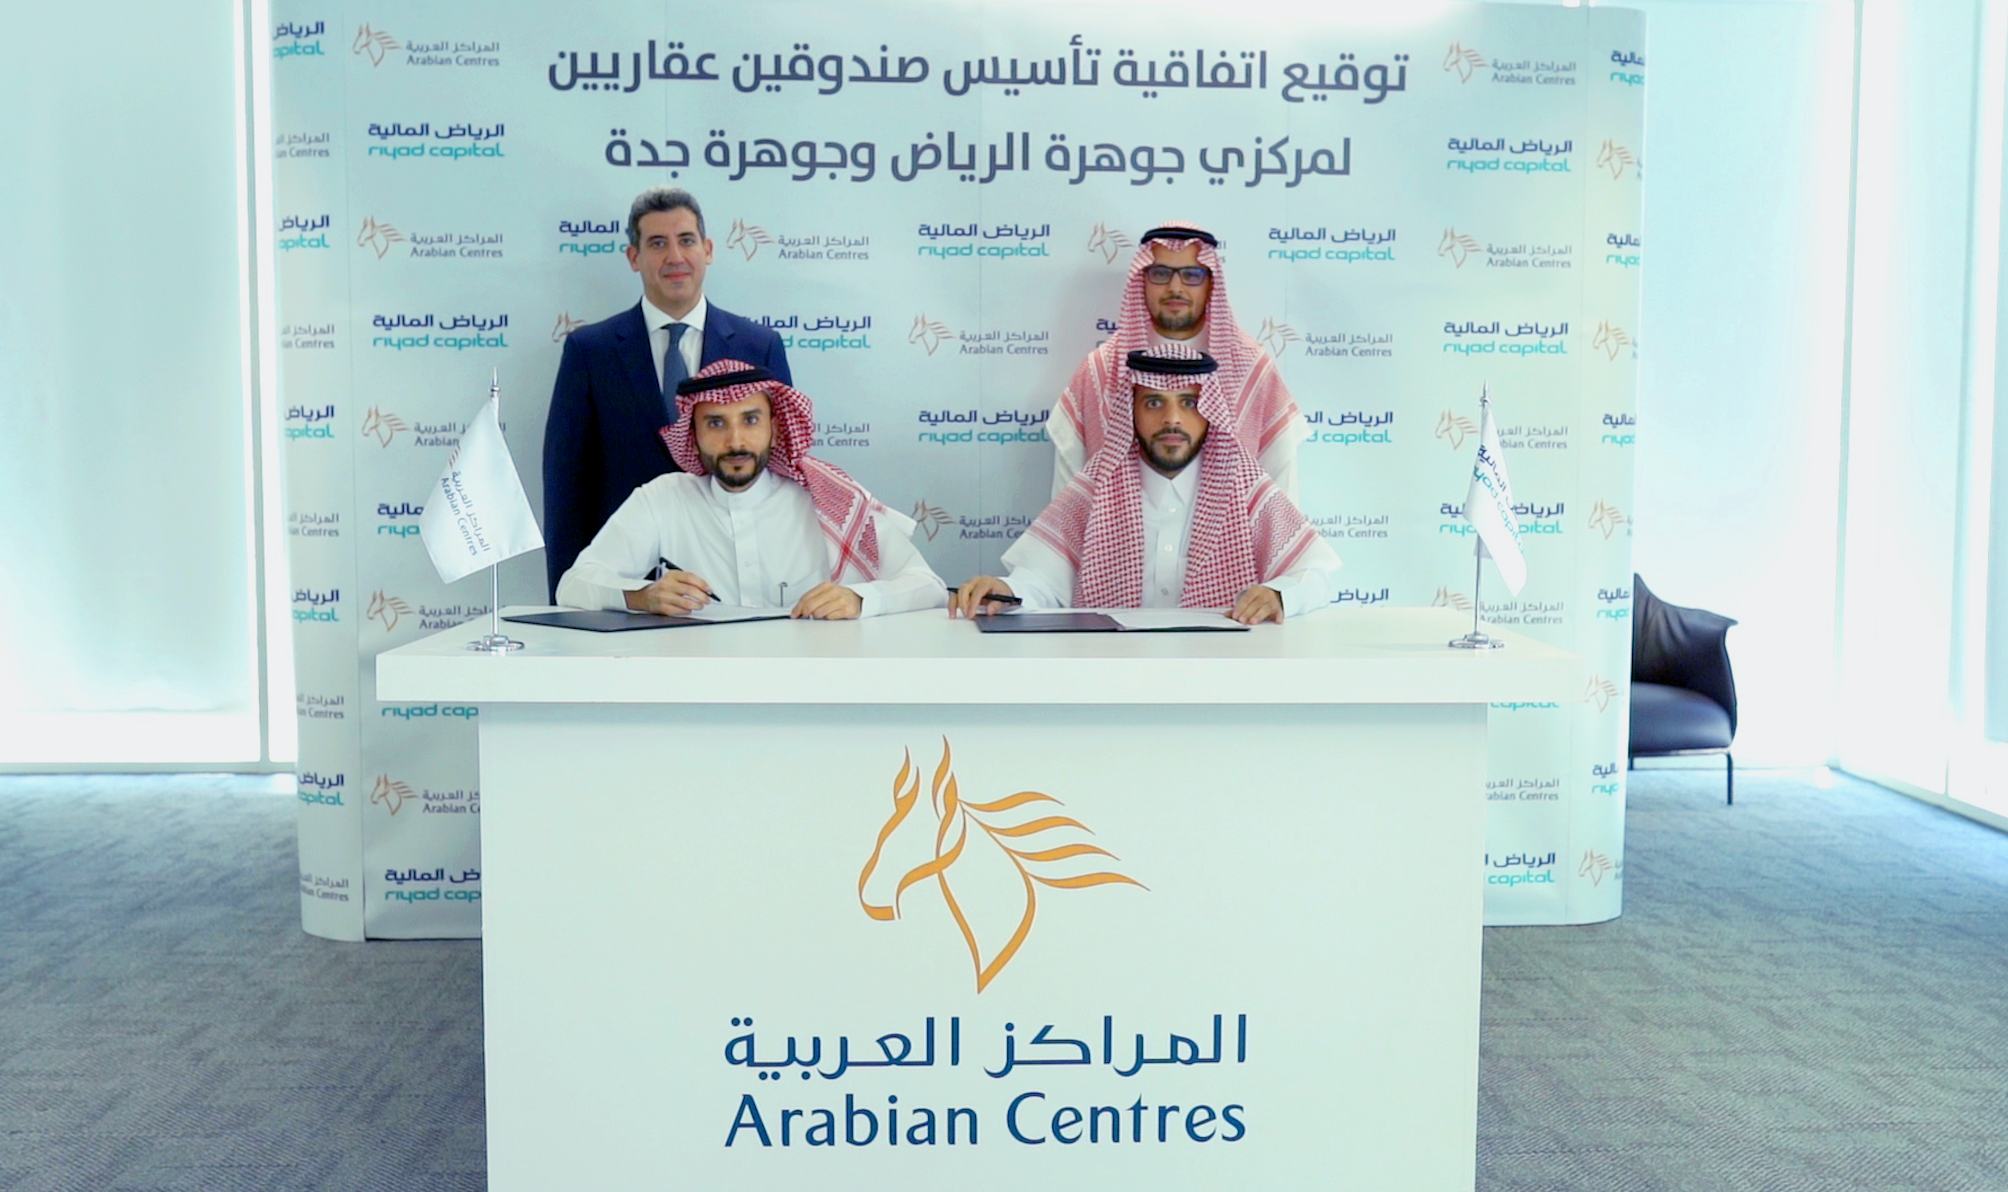 المراكز العربية توقع اتفاقيتين مع الرياض المالية لتأسيس صندوقين عقاريين استثماريين